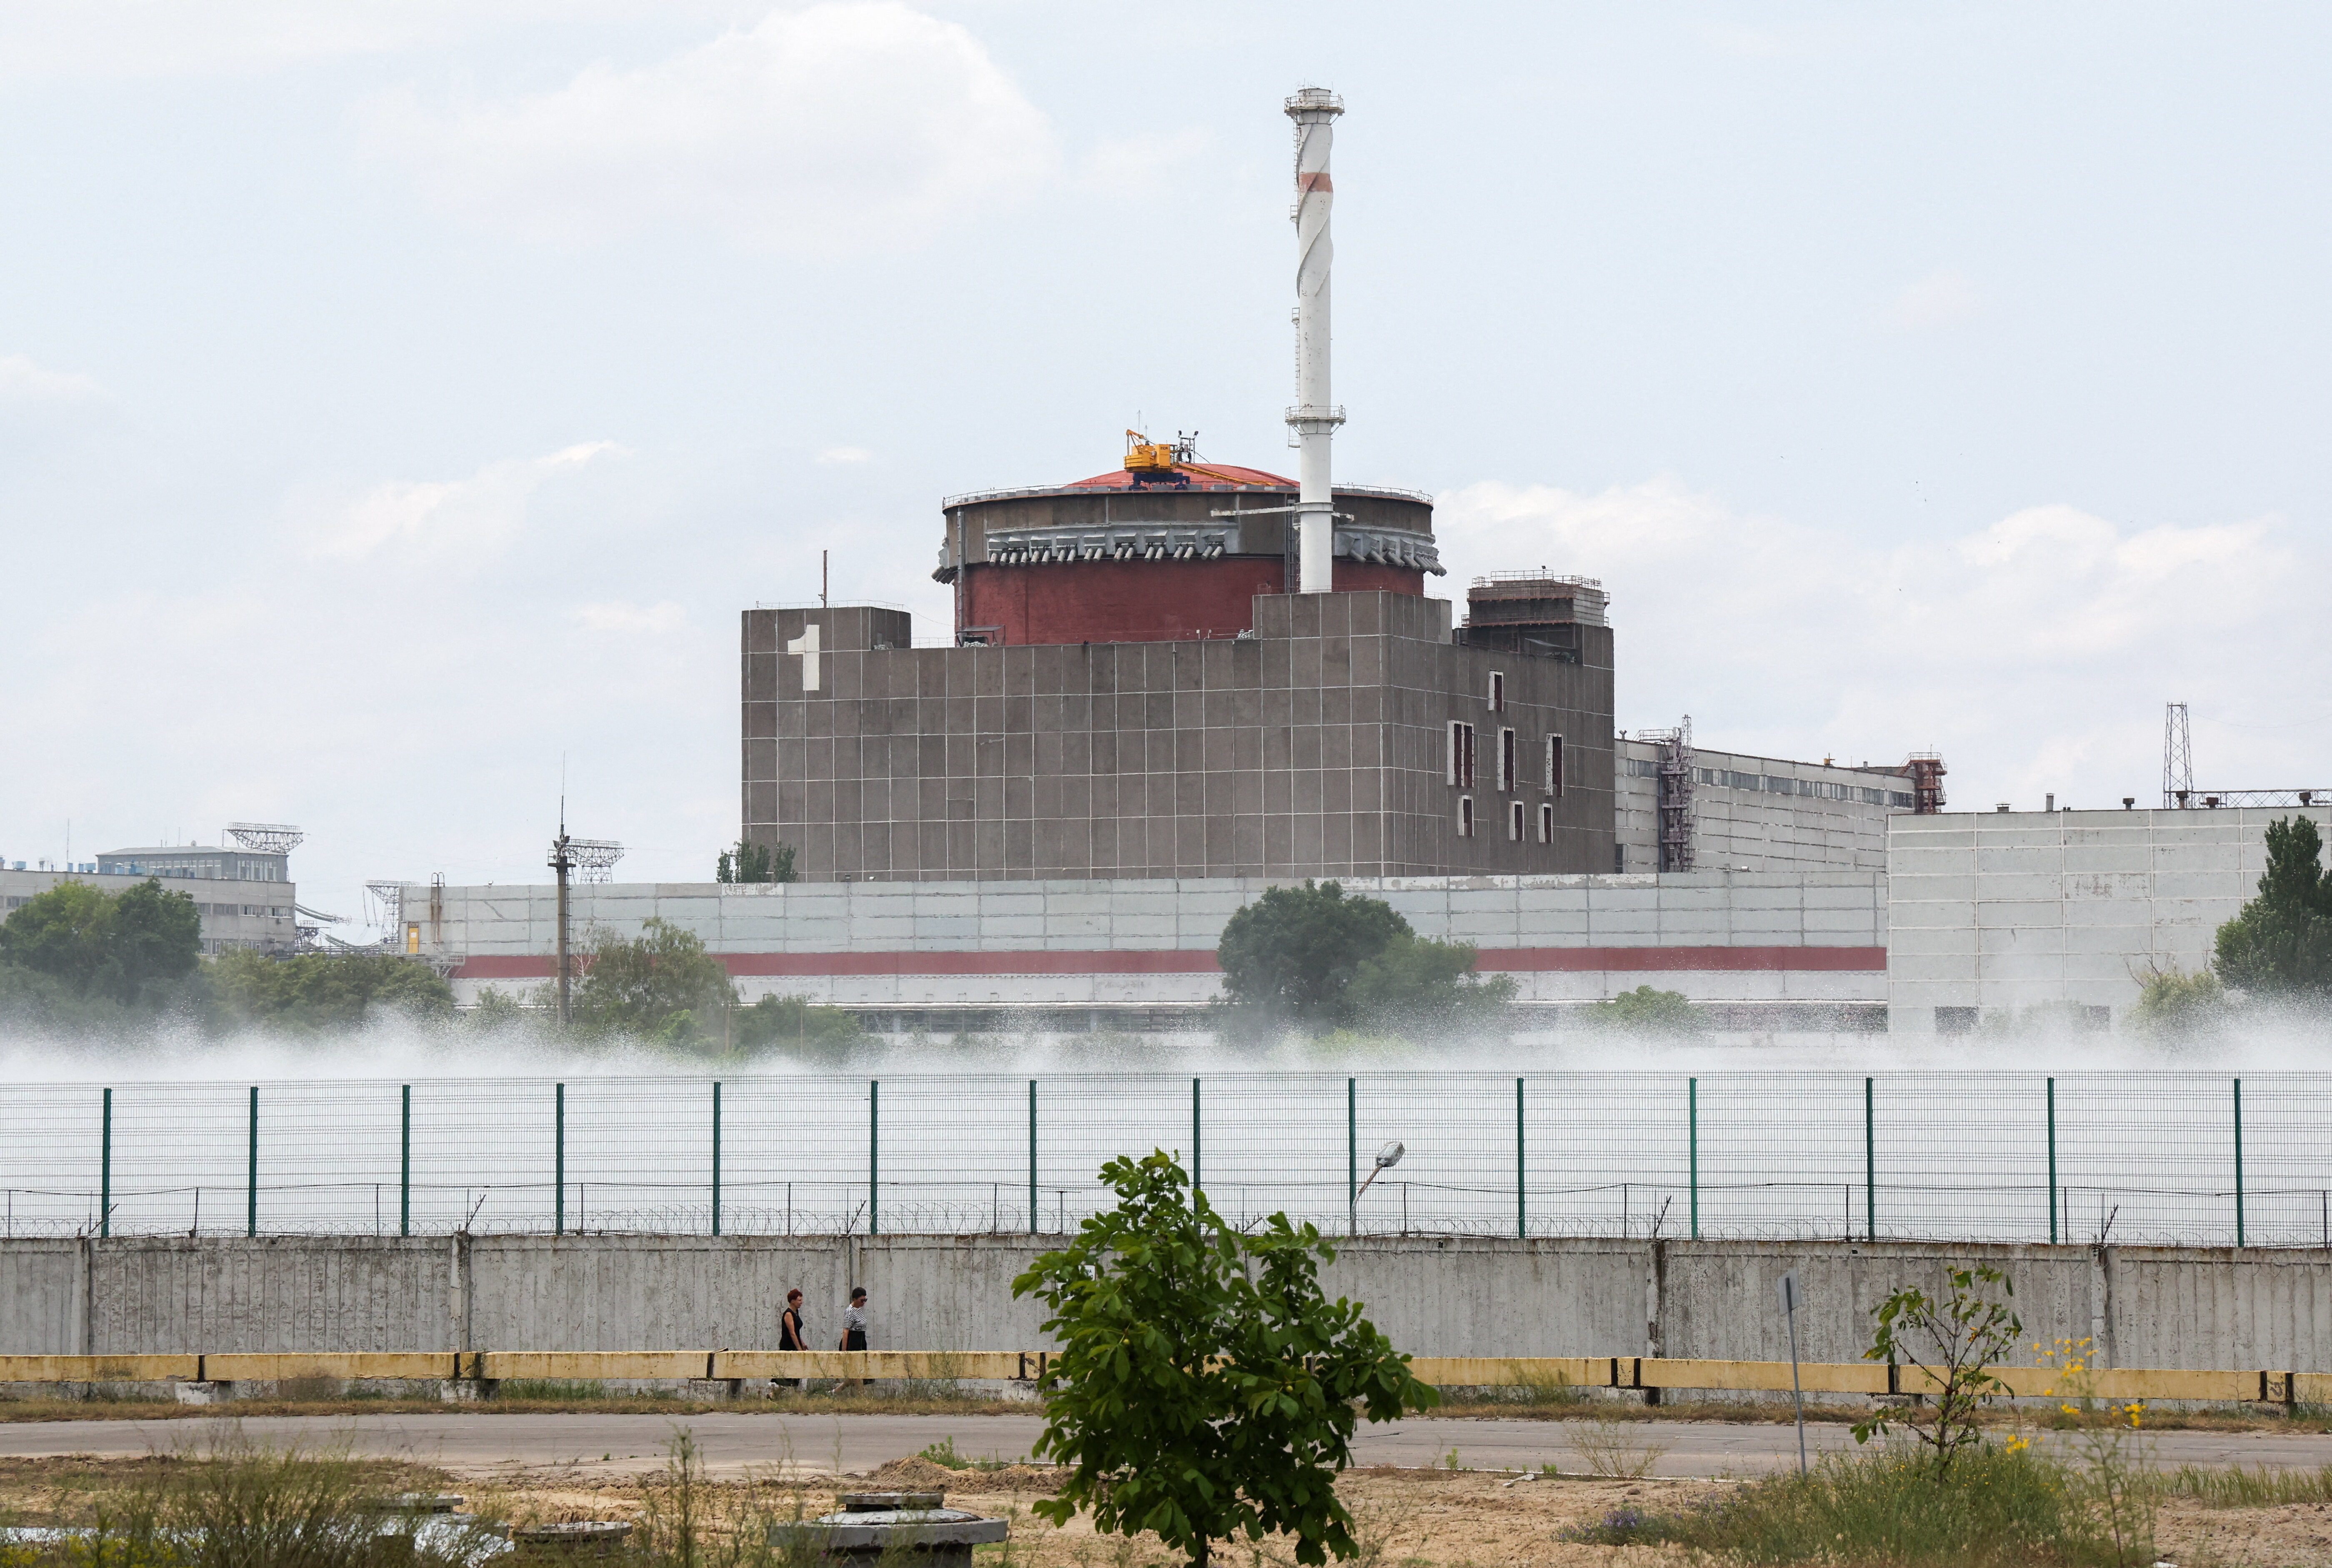 Selon le président Zelensky, un risque nucléaire existe à la centrale nucléaire de Zaporijjia occupée par les russes depuis 786 jours. Tass/ABACA